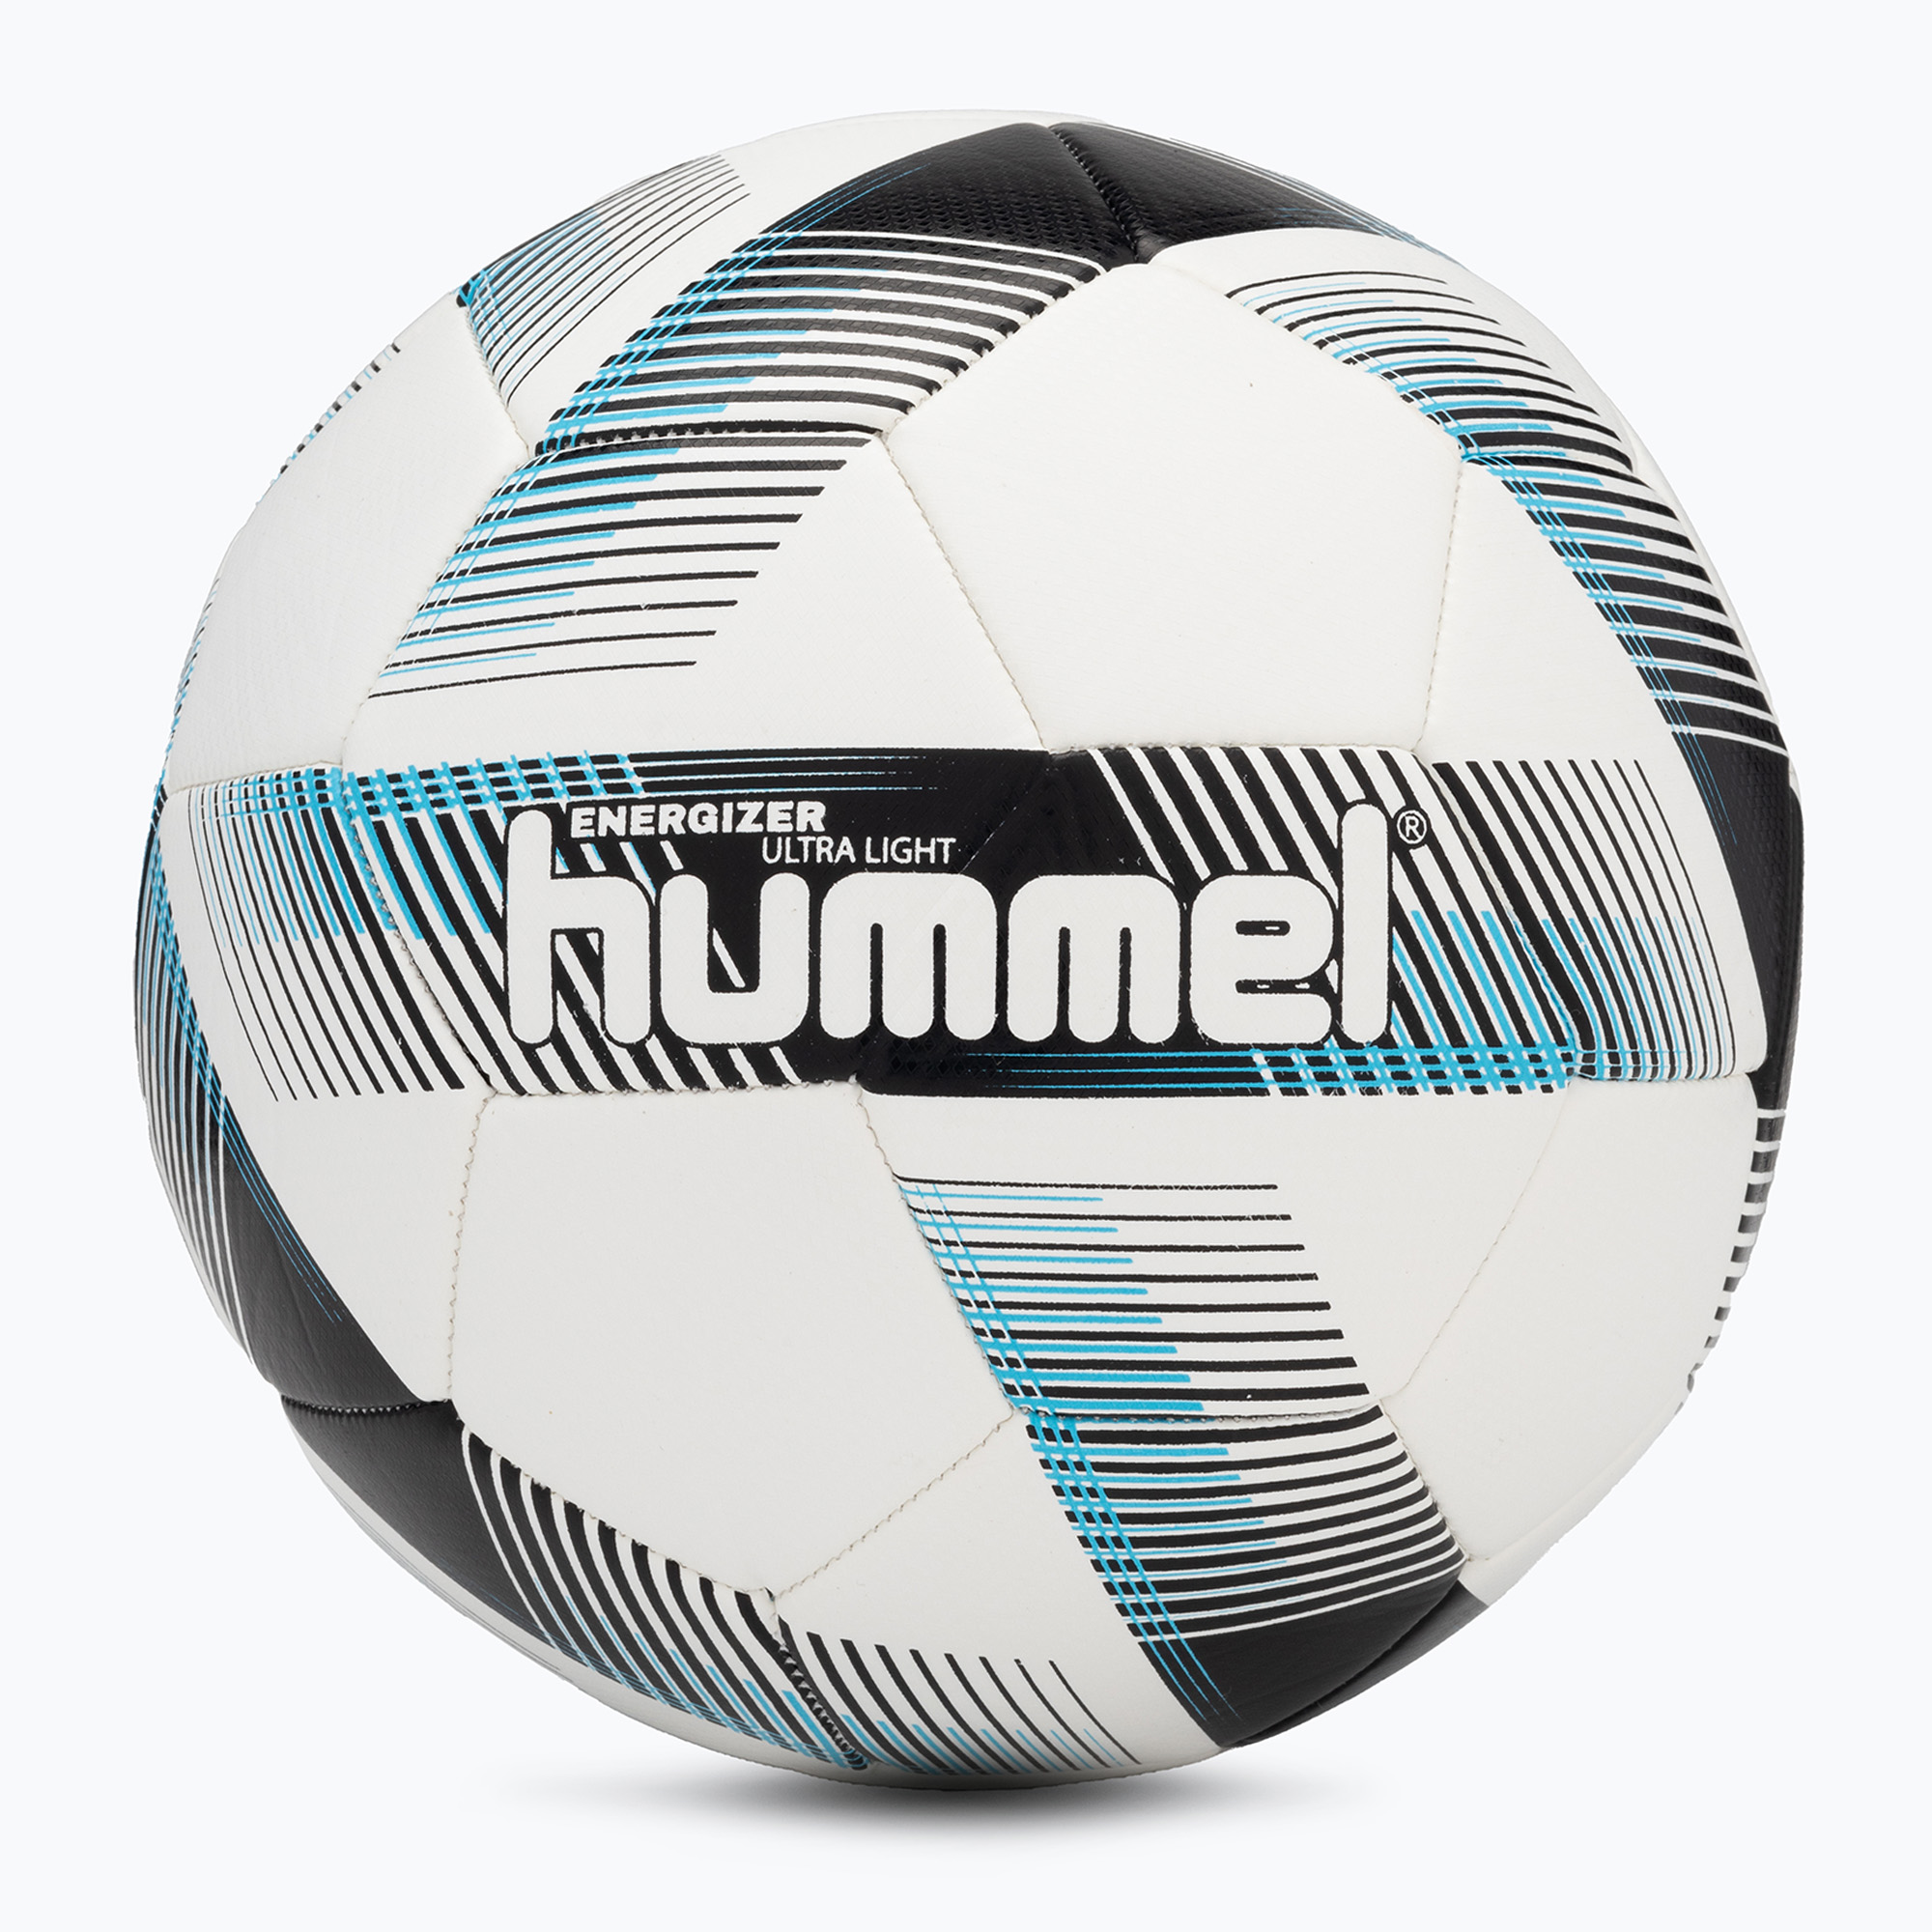 Hummel Energizer Ultra Light FB futbalová lopta biela/čierna/modrá veľkosť 4